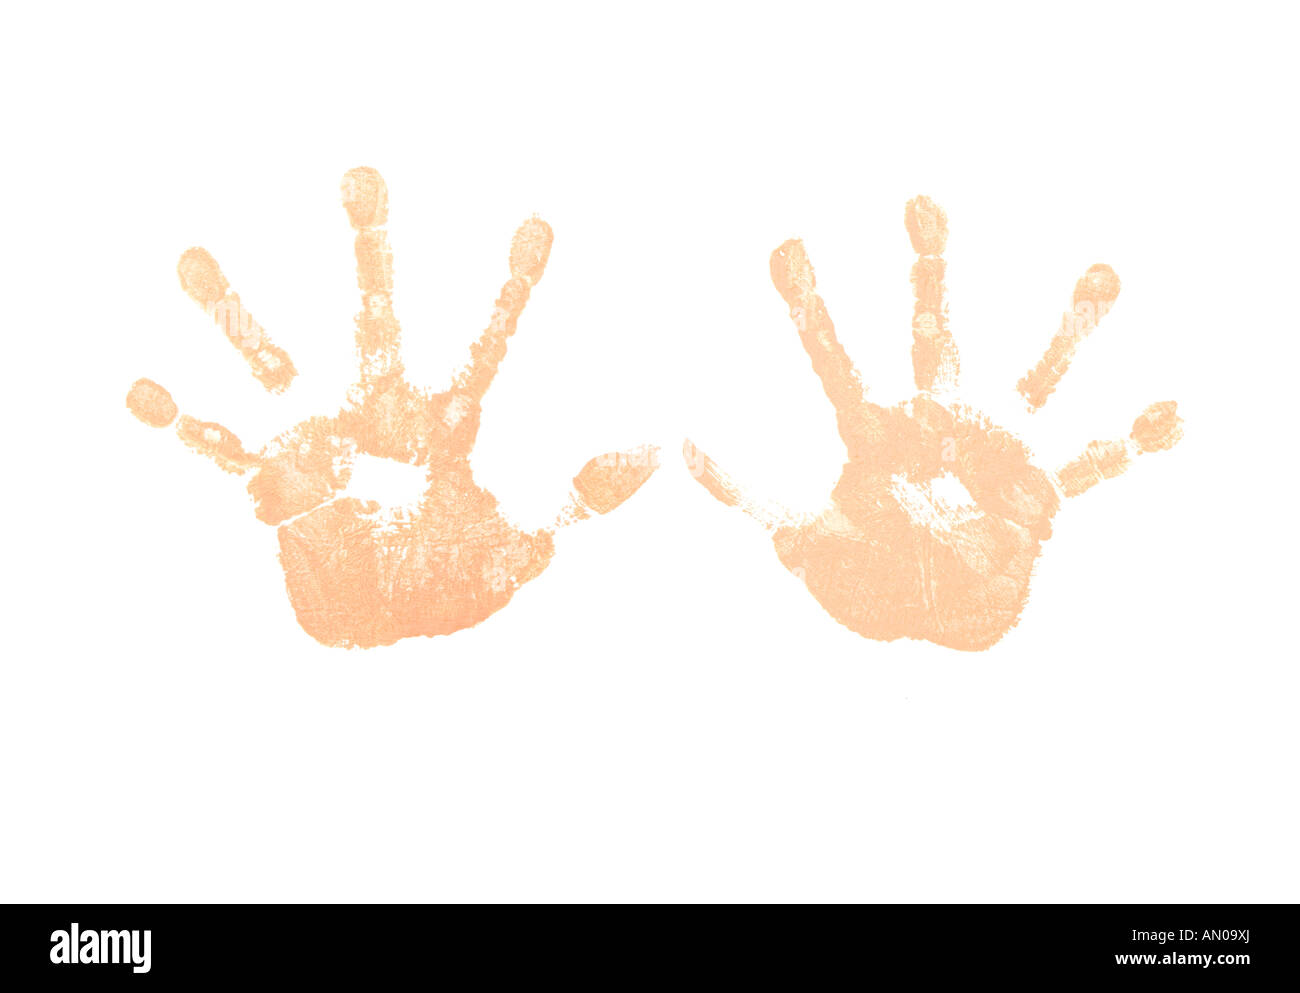 Fleisch-farbige Hand druckt Foto illustration Stockfoto